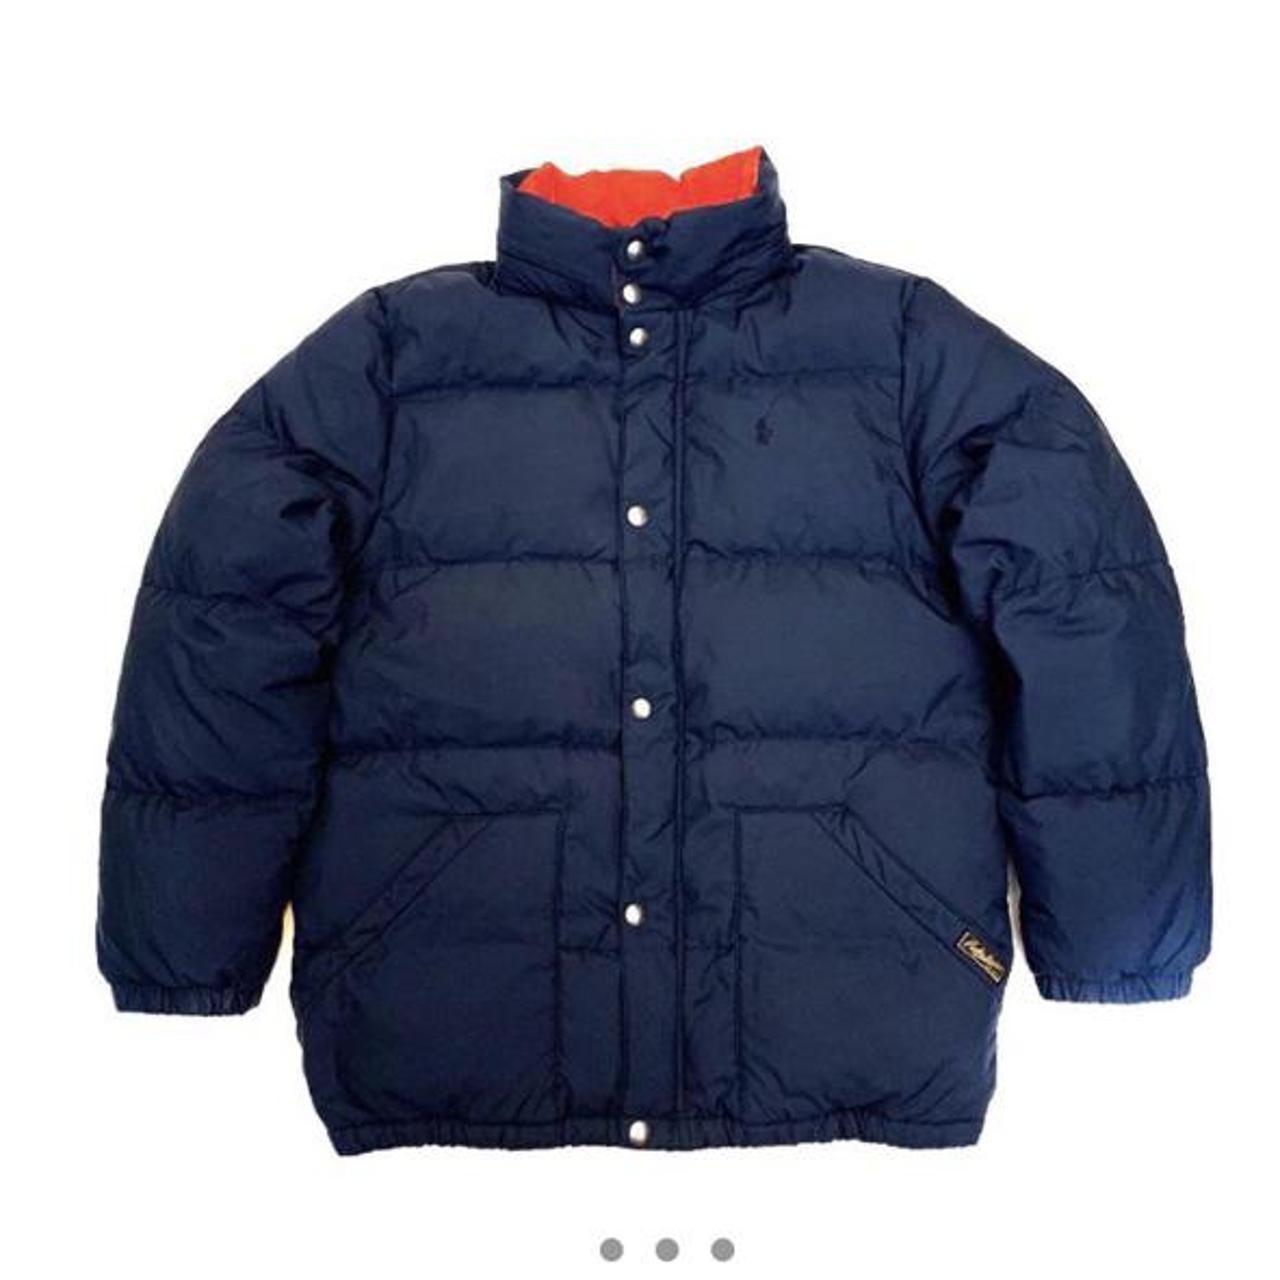 polo Ralph Lauren puffer jacket Good quality jacket... - Depop